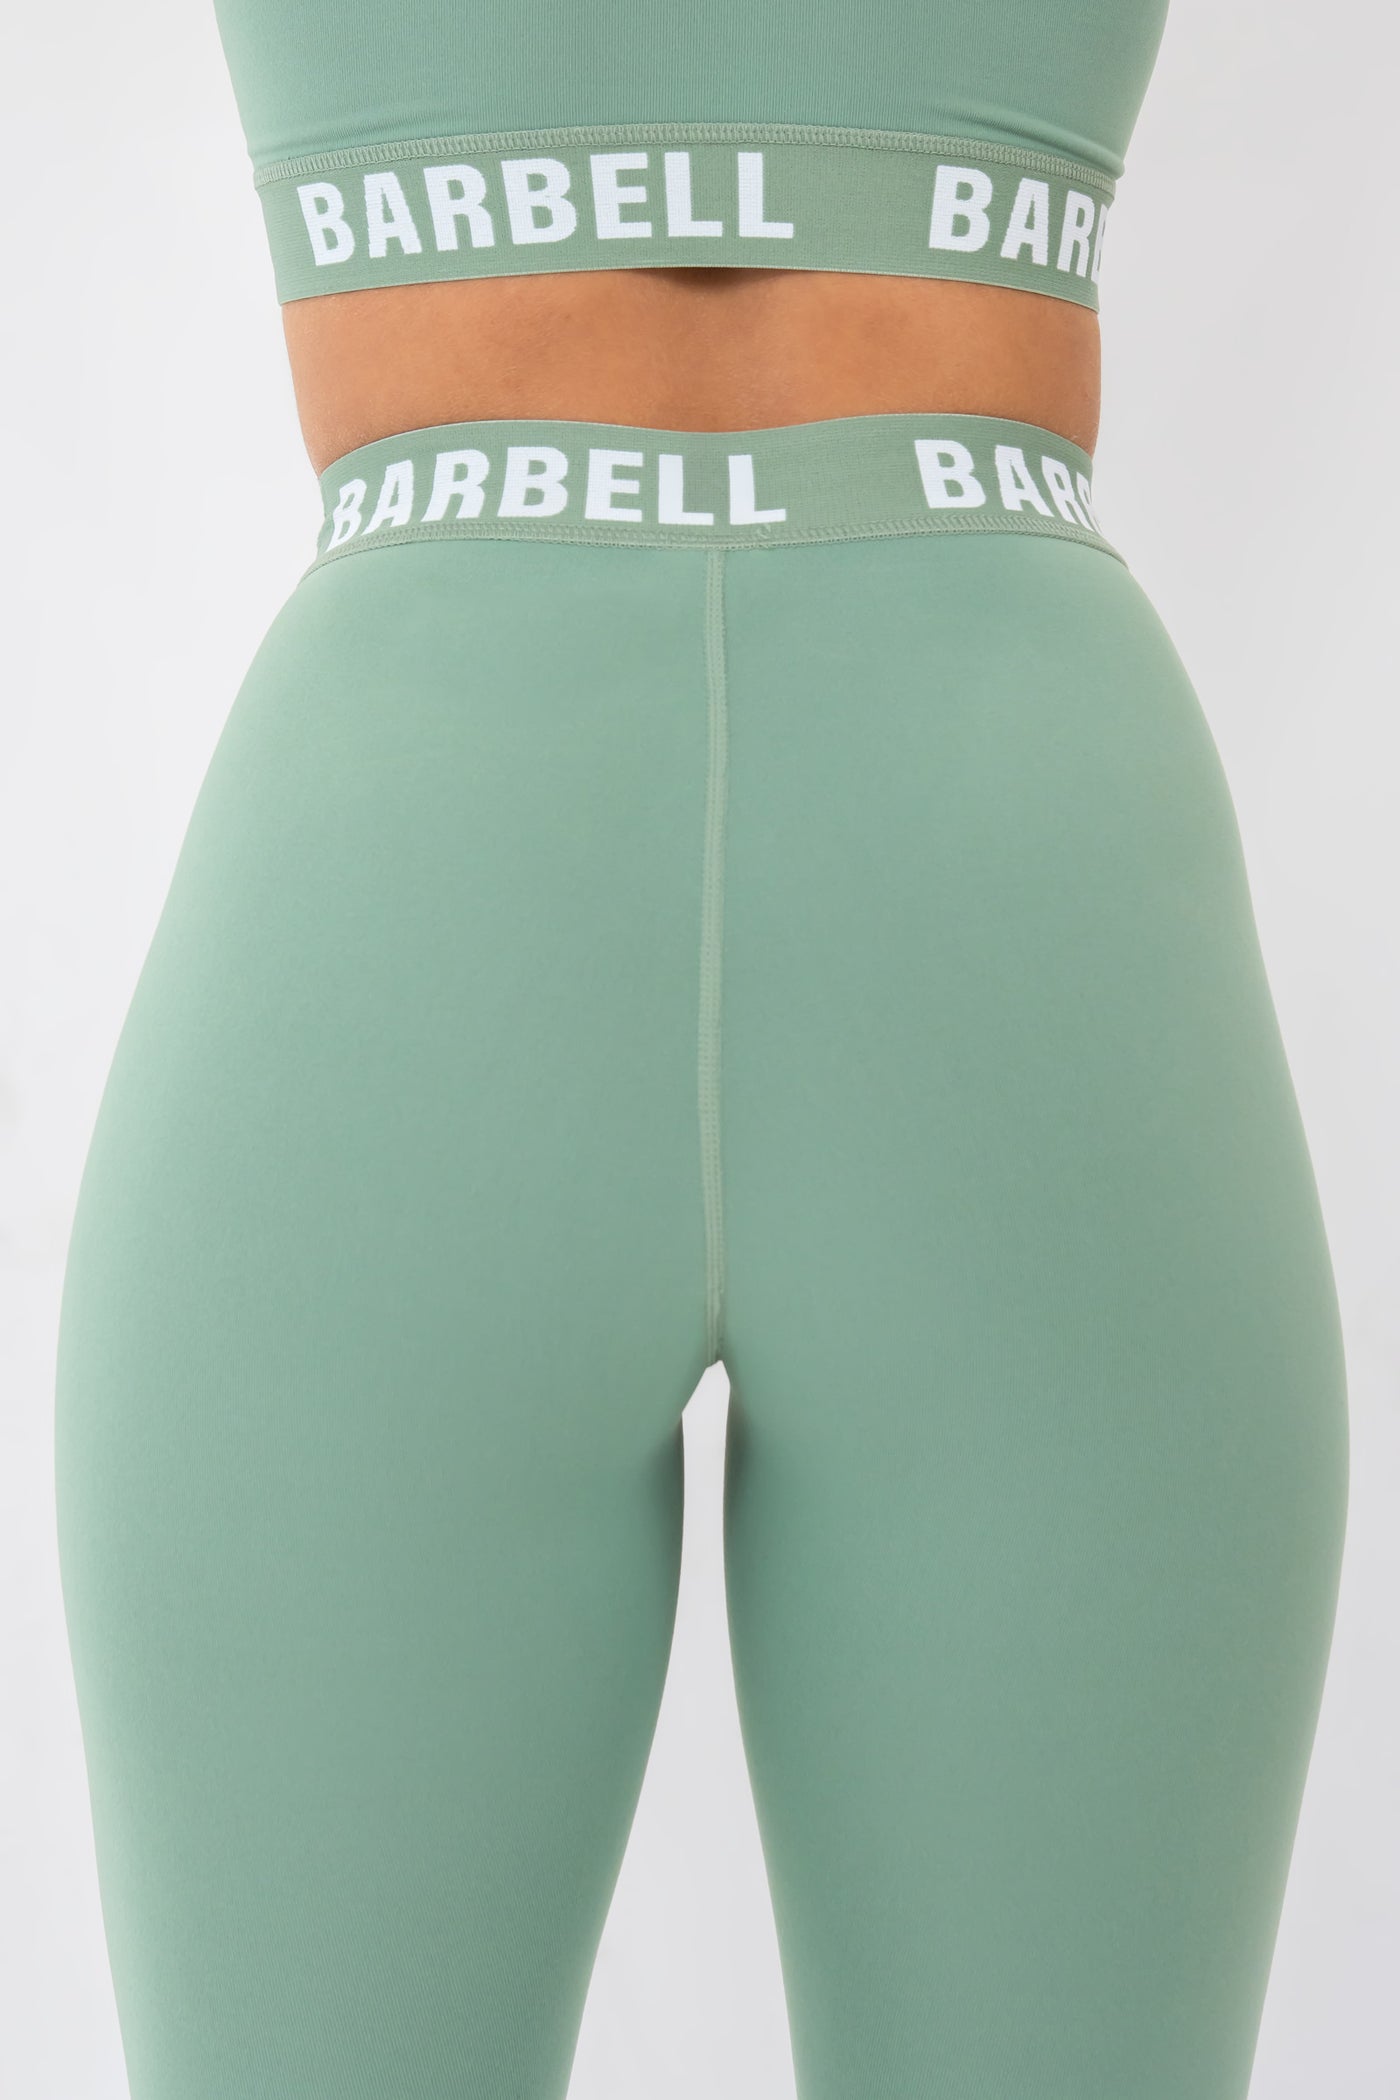 Barbell Barbell Leggings-Basil - photo from back detail #color_basil